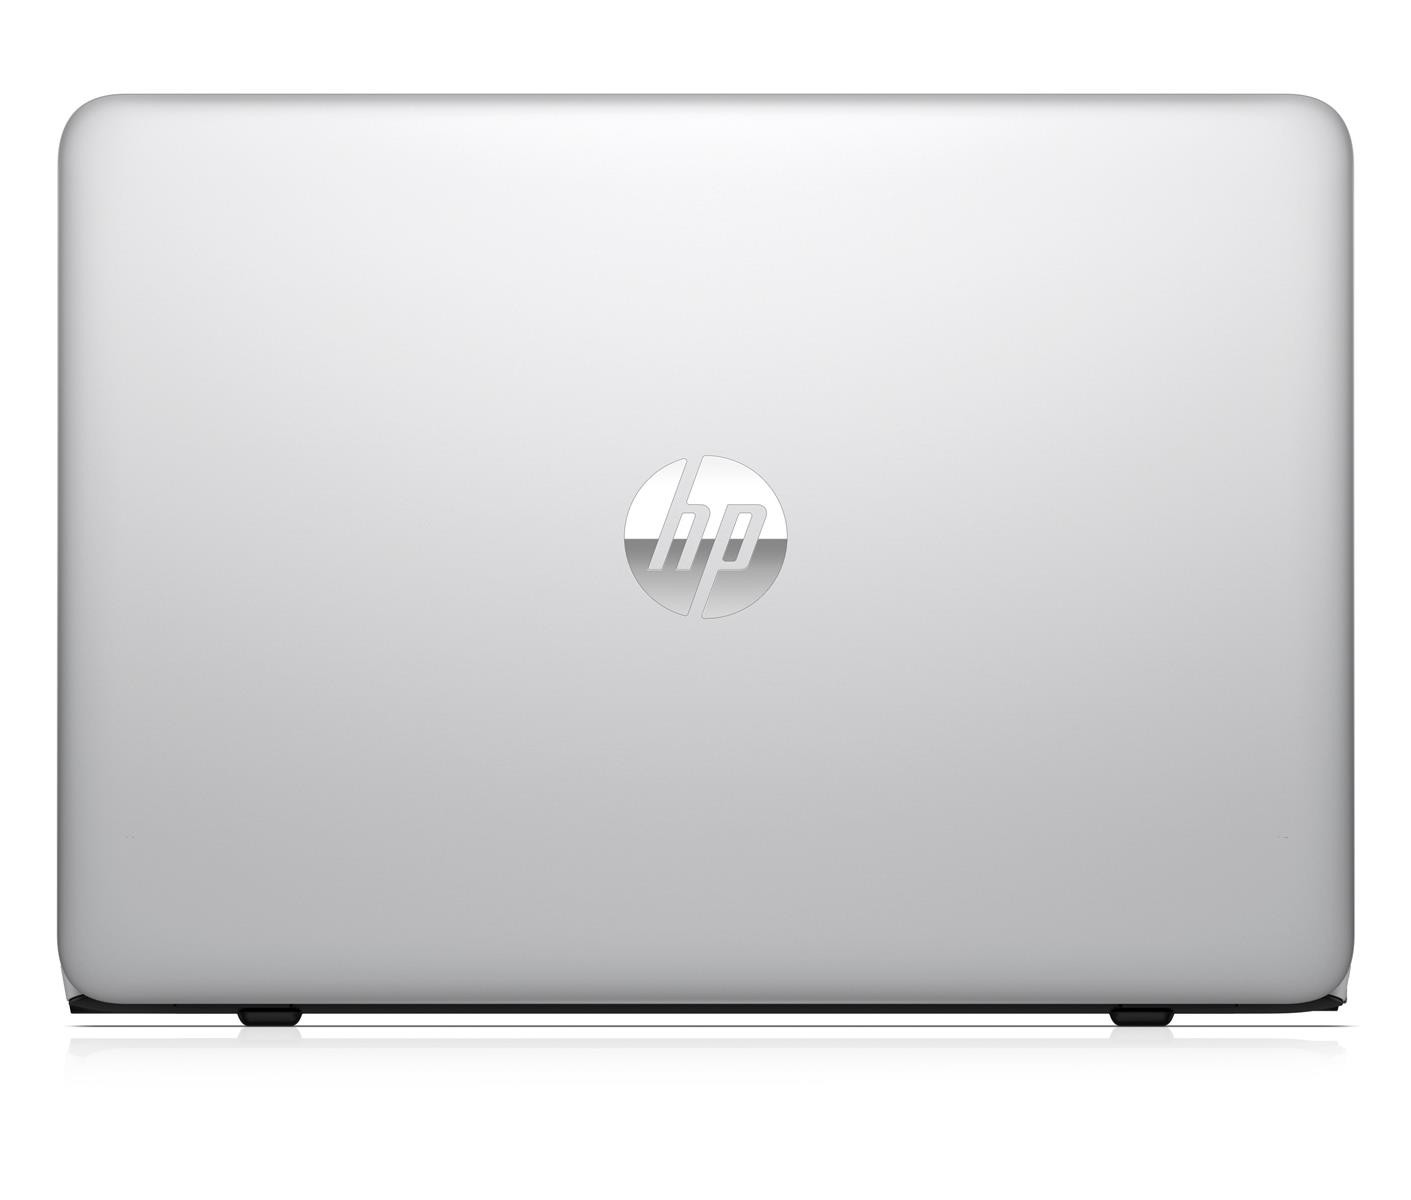 HP EliteBook 840 G4 Intel Core i5-7300 8GB RAM 256GB SSD Full HD Win 10 Pro DE